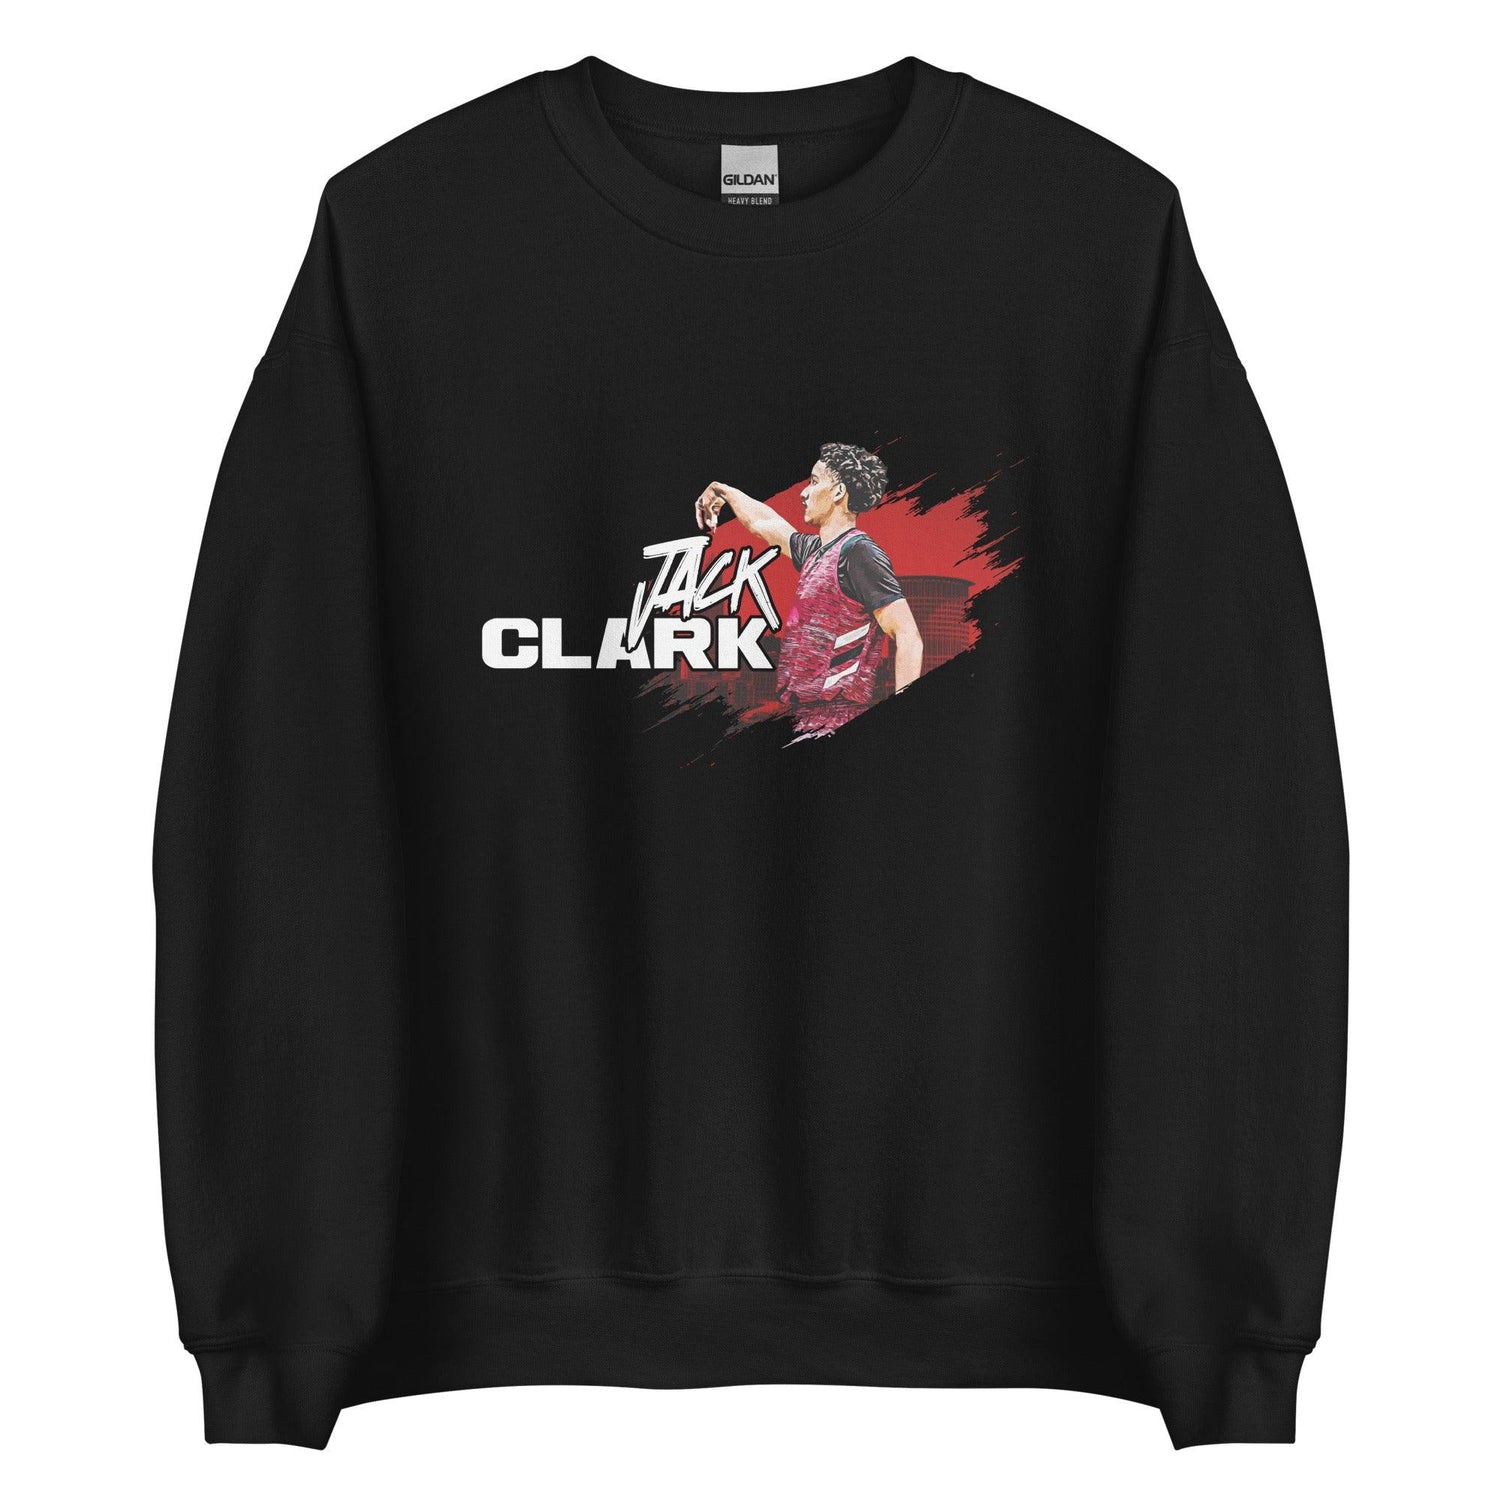 Jack Clark "Gameday" Sweatshirt - Fan Arch